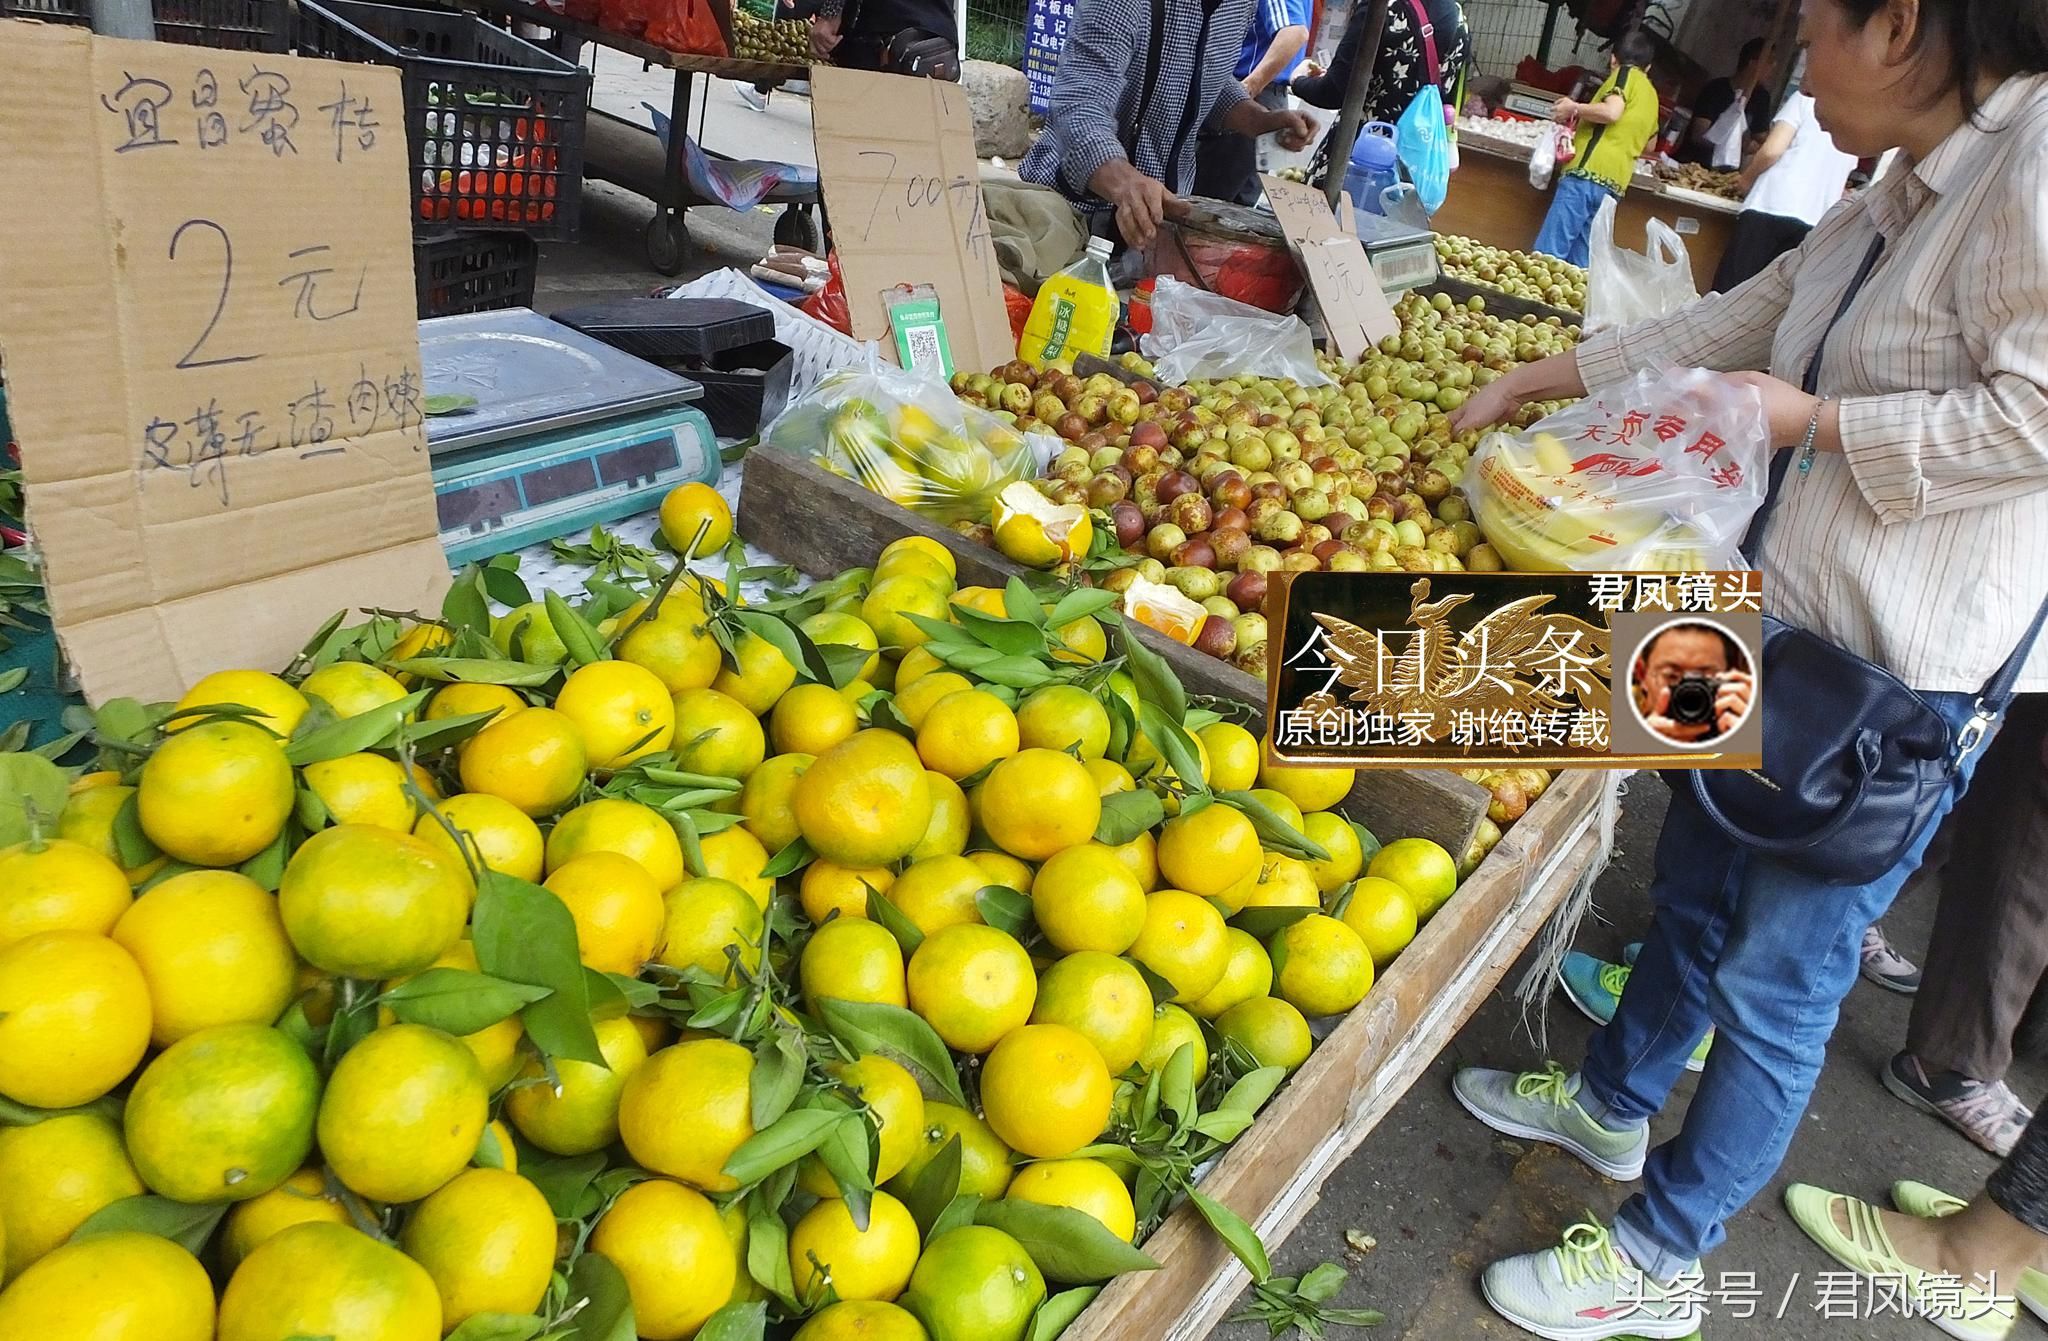 湖北宜昌:葛洲坝菜市场,农民种植的柑橘售价1